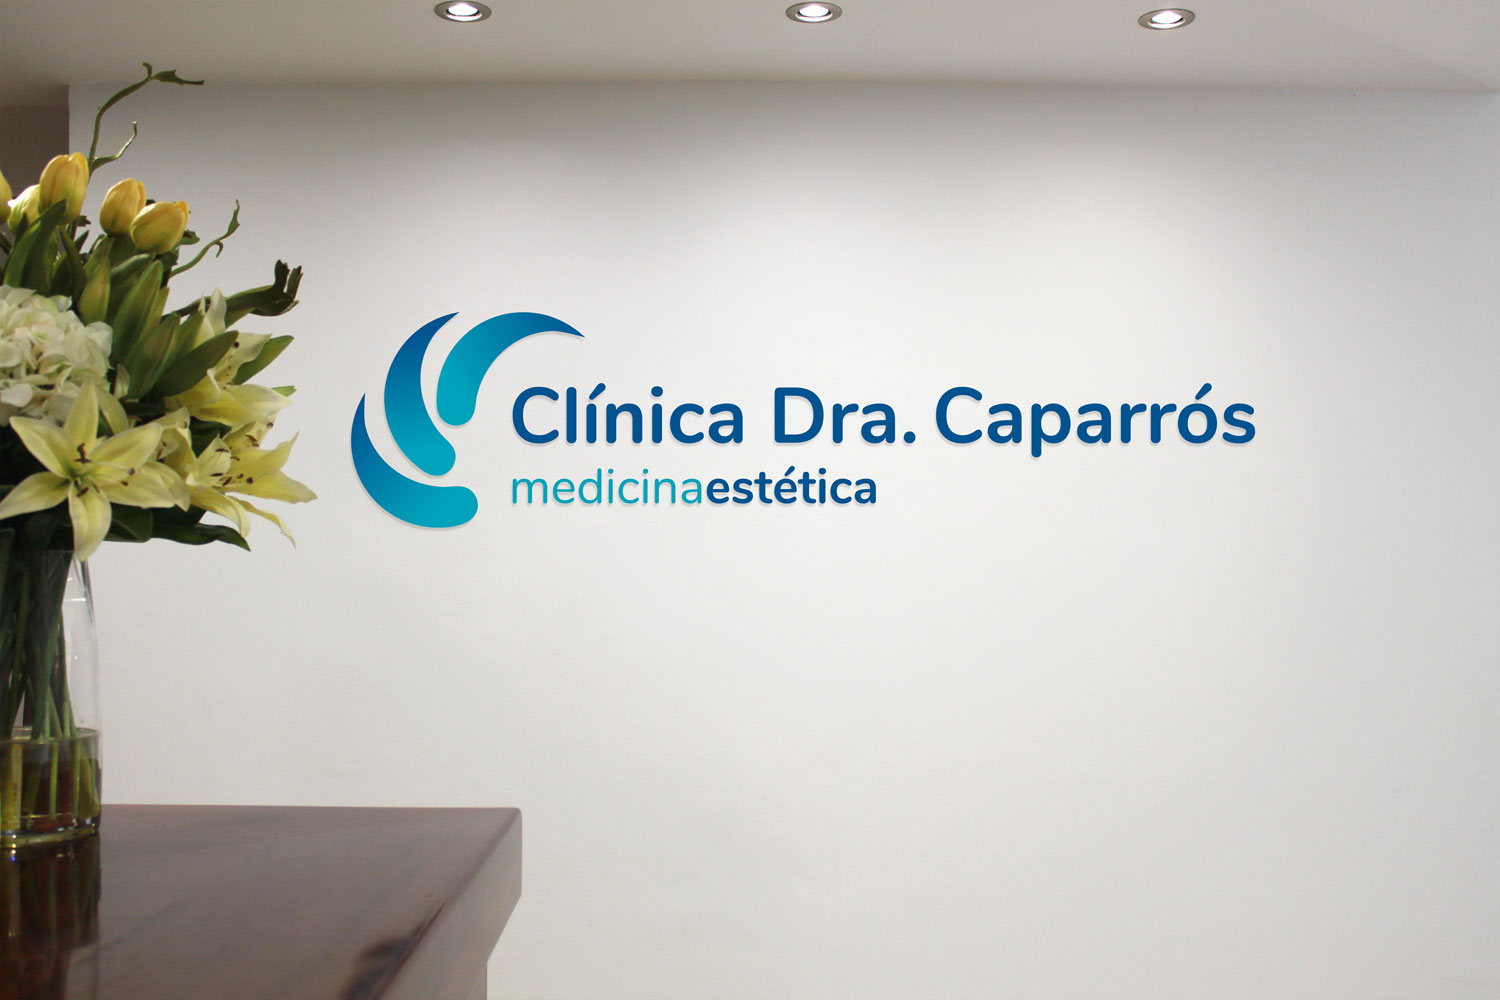 clínica medicina estética en Málaga, servicios medicina estética málaga, medicina estética málaga